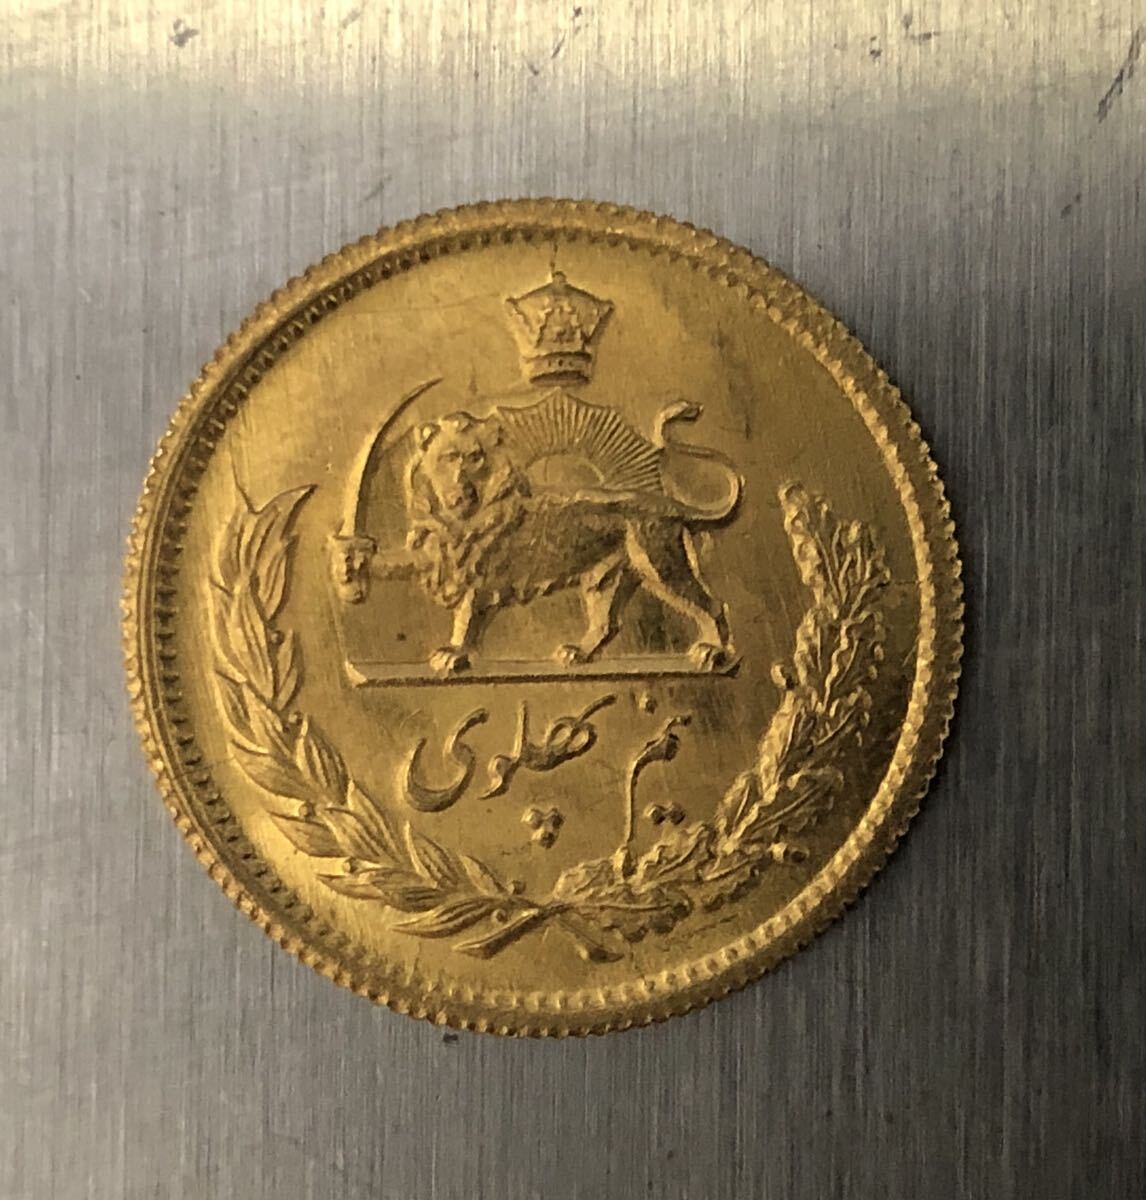 イラン 1/2パーレビ金貨 4.1g 古銭 アンティーク コイン 硬貨 の画像2